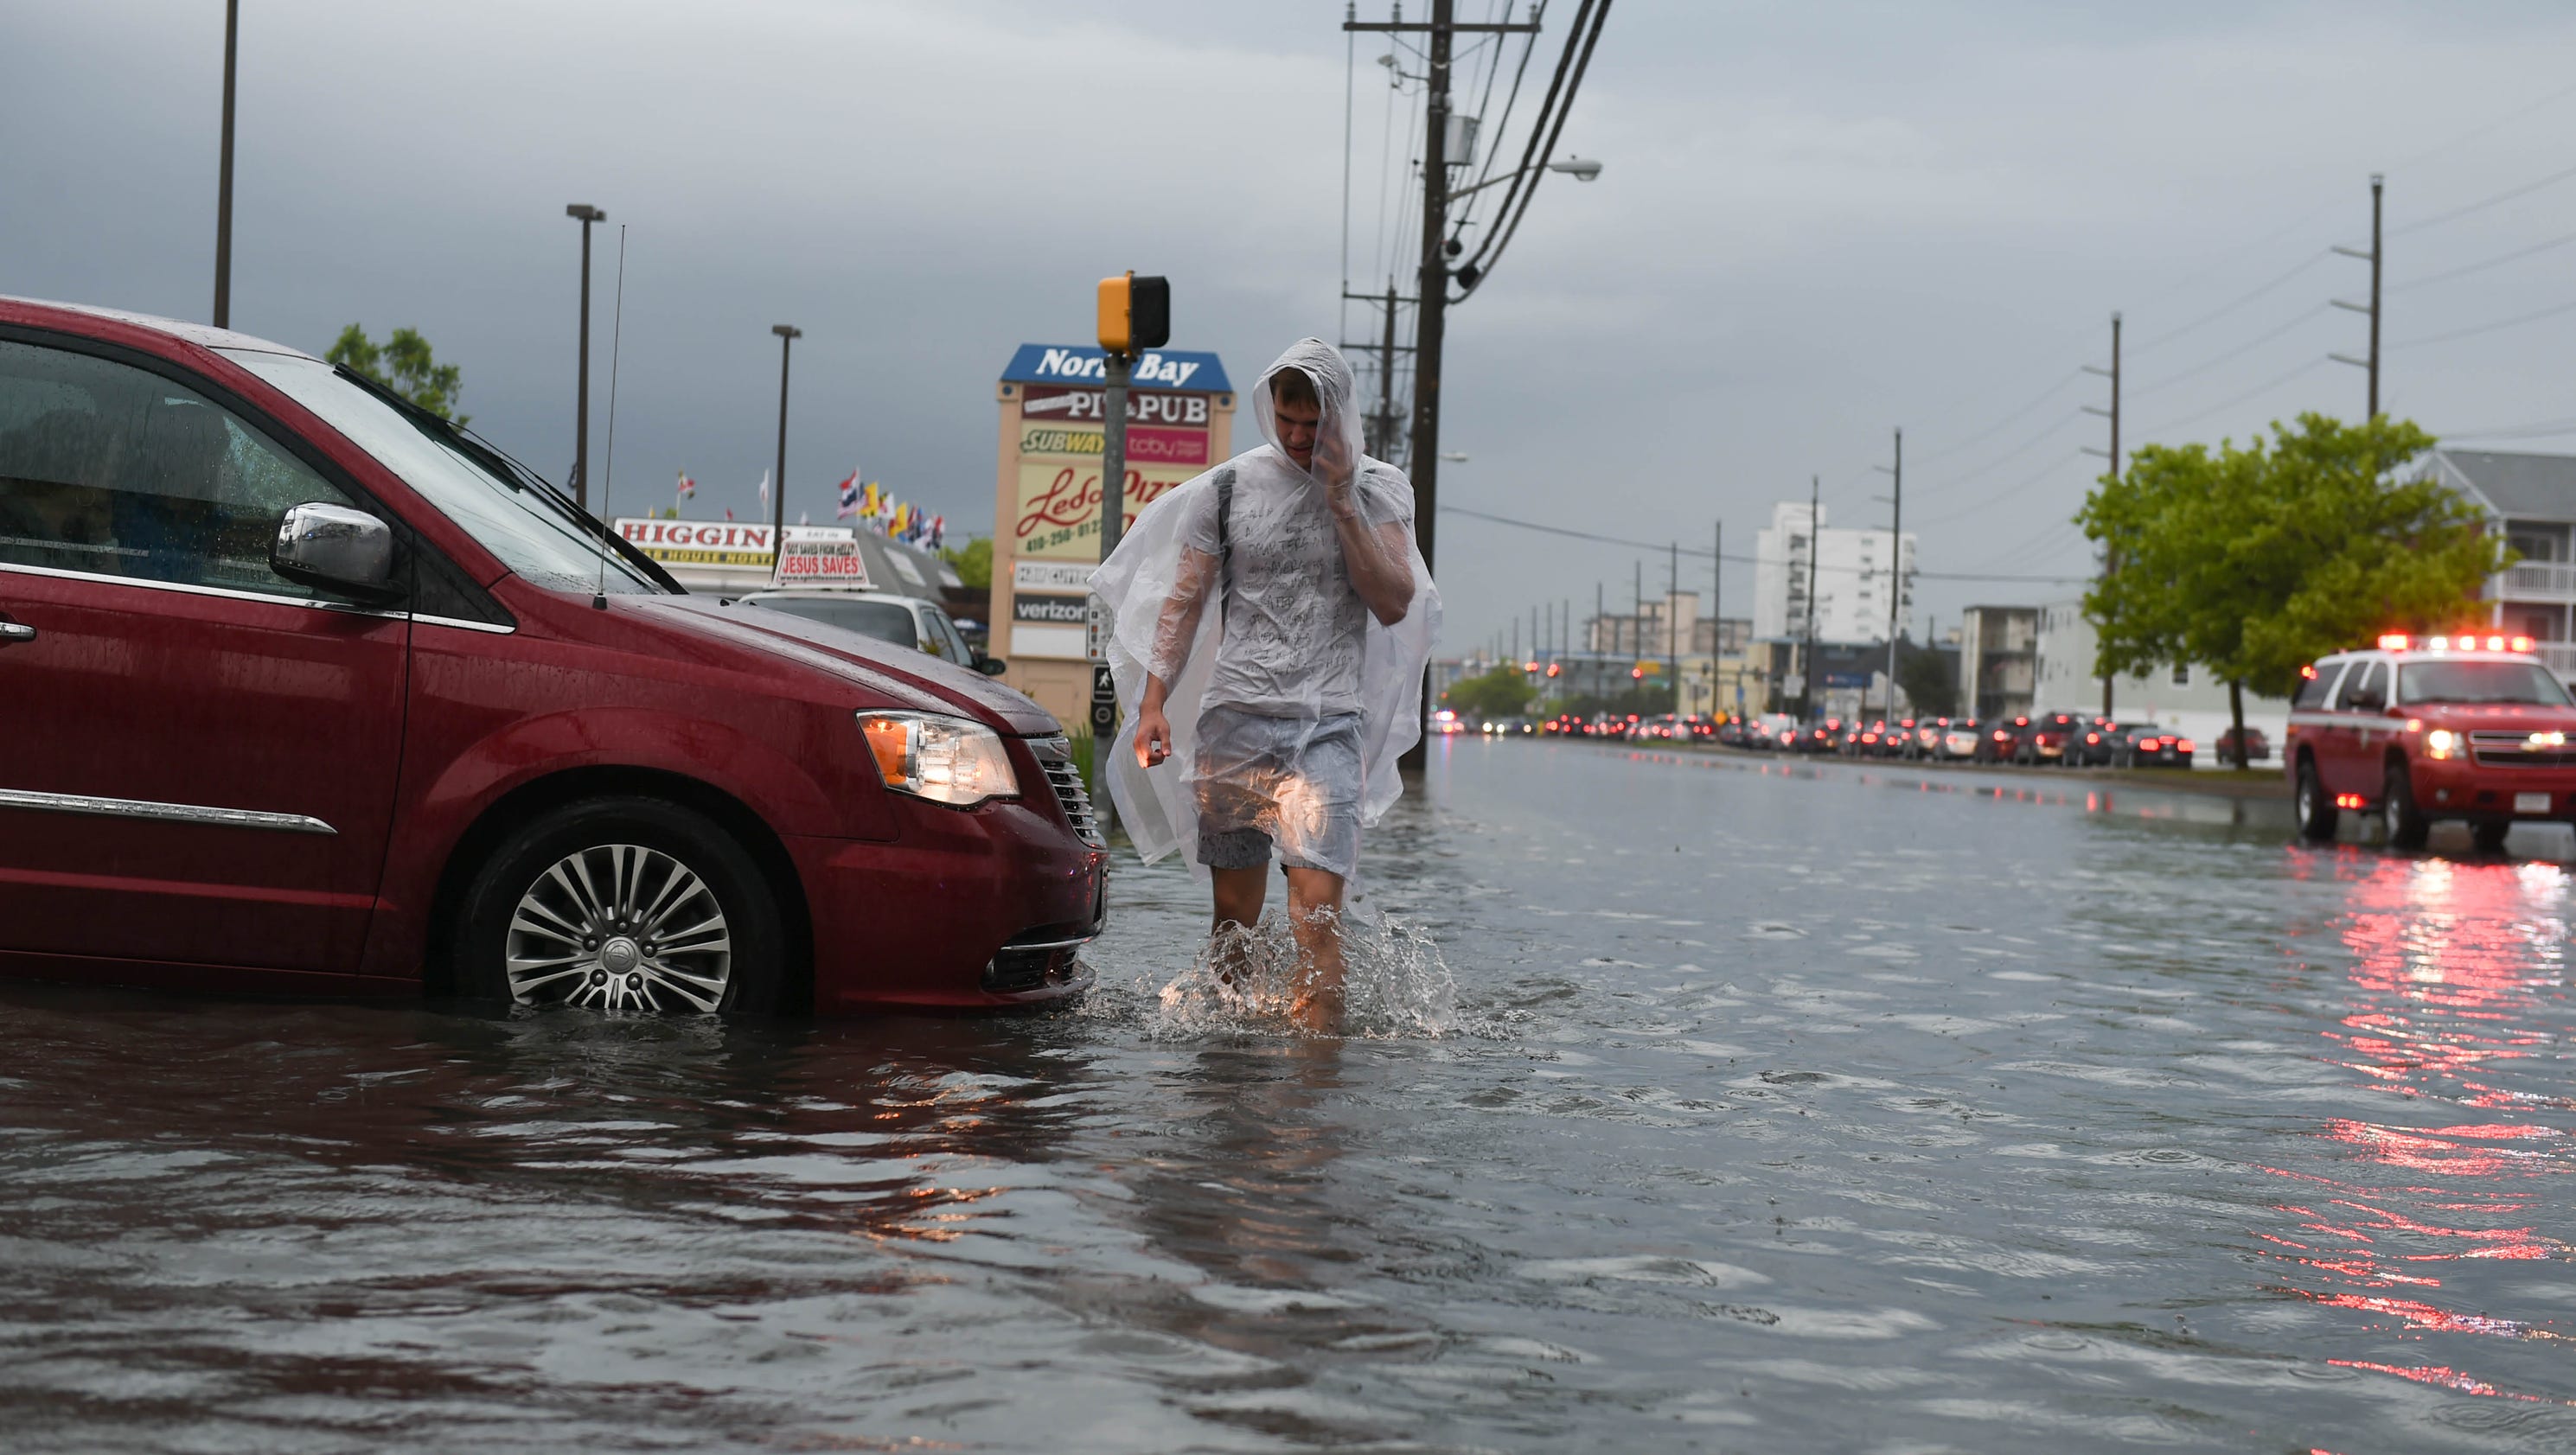 Photos Ocean City flooding after heavy rains